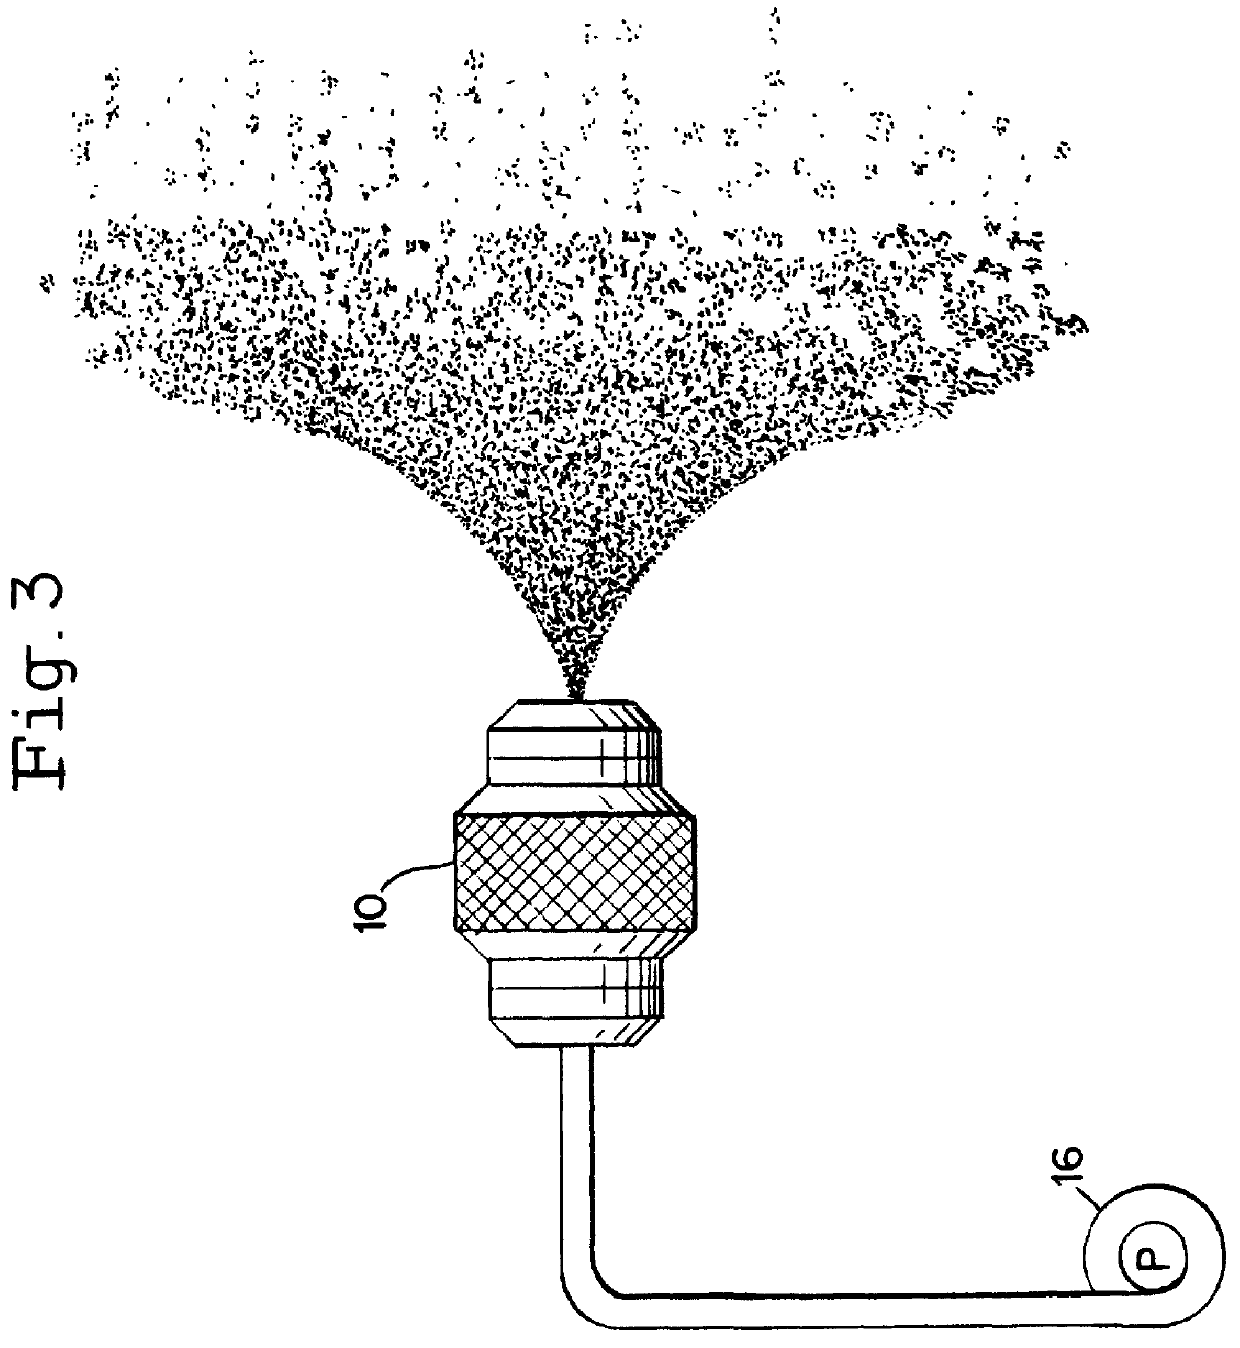 Indirect supplemental evaporation cooler